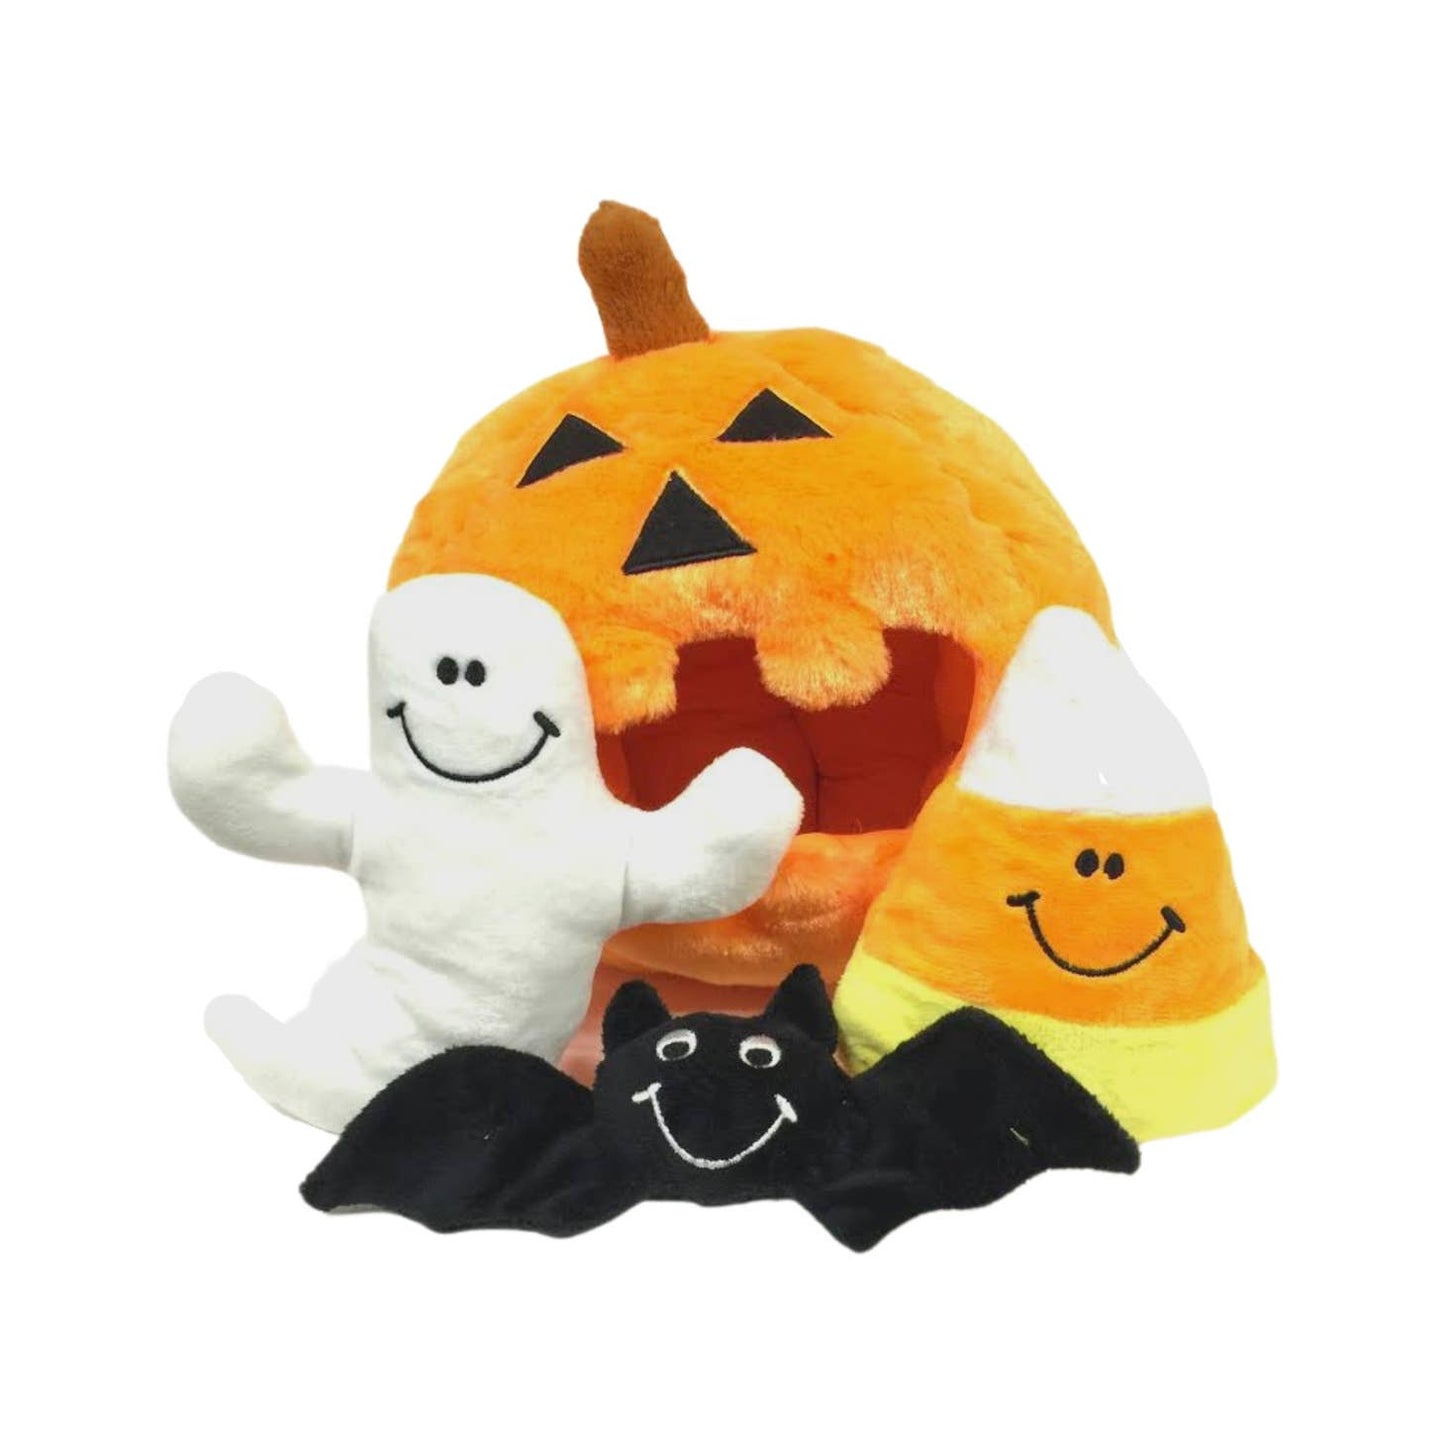 Spooky Pumpkin Toy